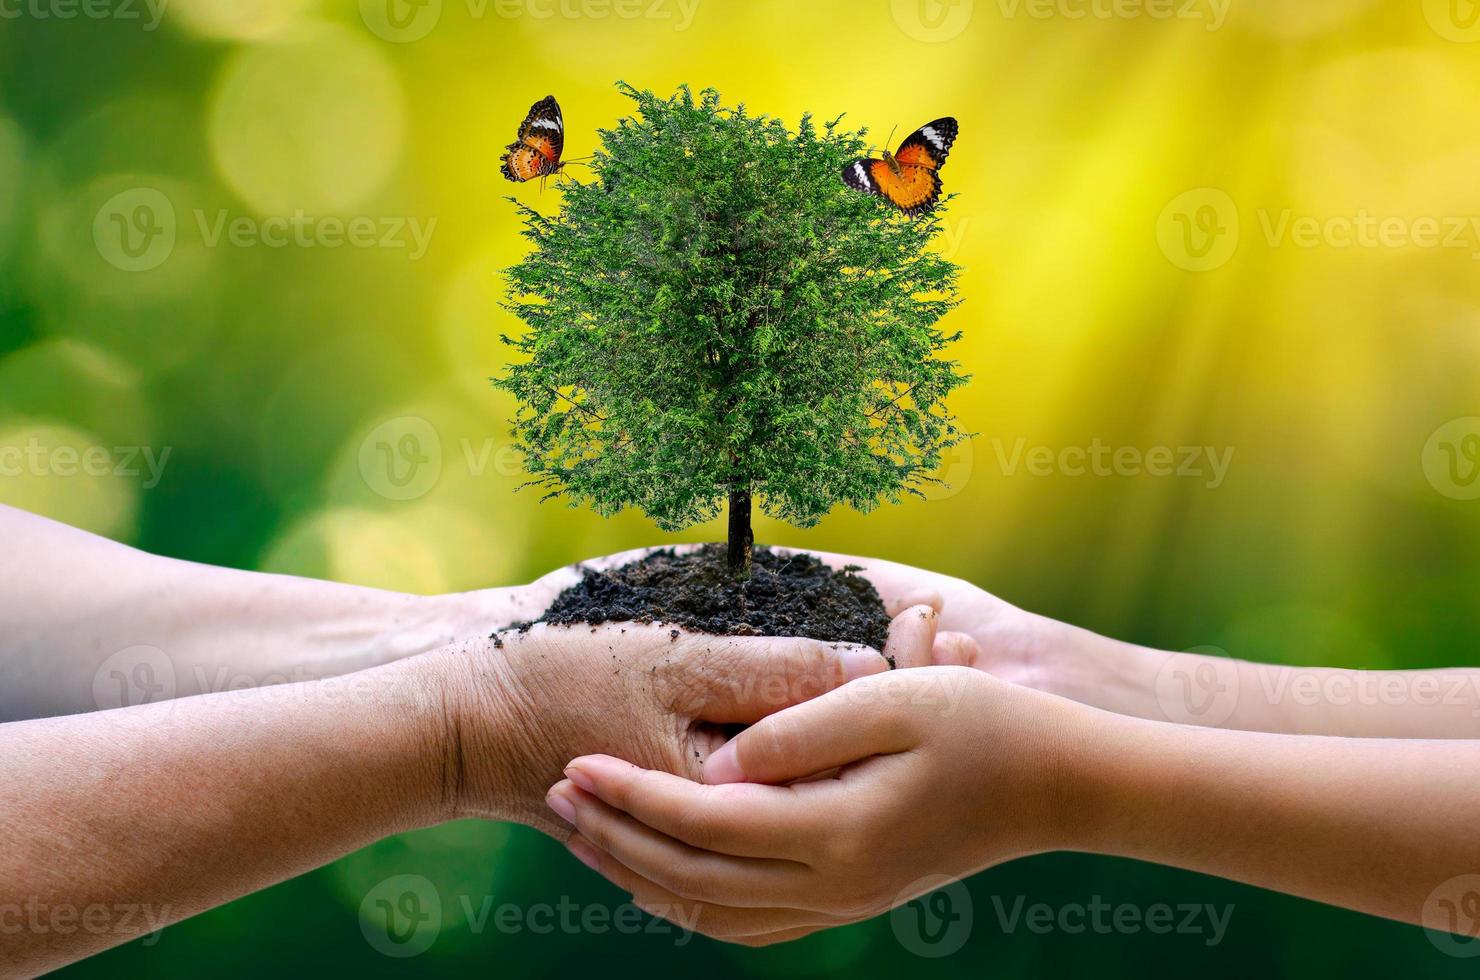 meio ambiente dia da terra nas mãos de mudas de cultivo de árvores. bokeh fundo verde feminino mão segurando uma árvore no campo natureza grama foto